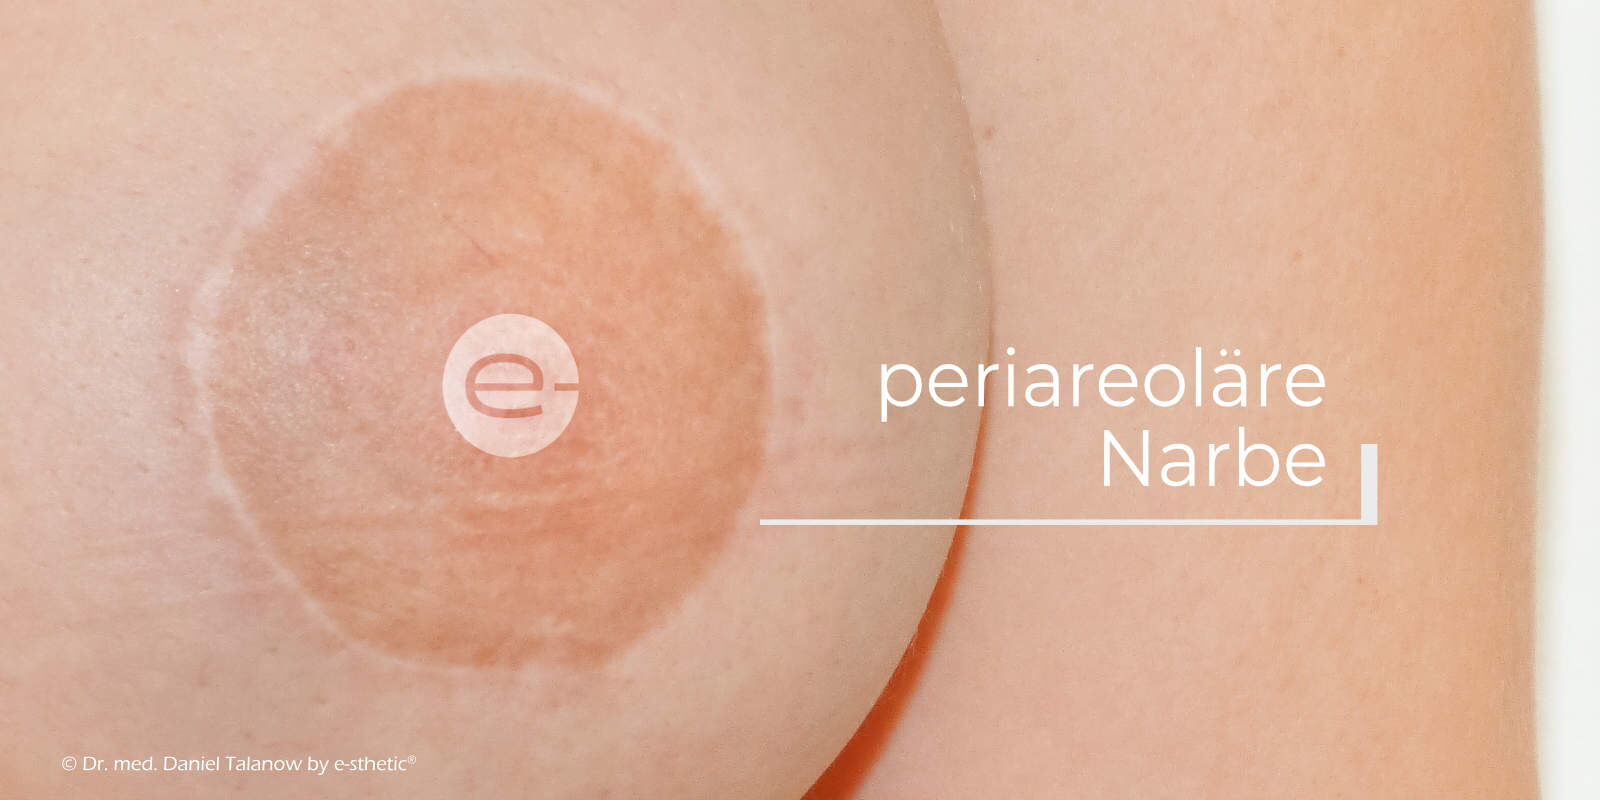 Eine periareoläre Straffung ist eine ringförmige Verkleinerung des Brustwarzenvorhofes